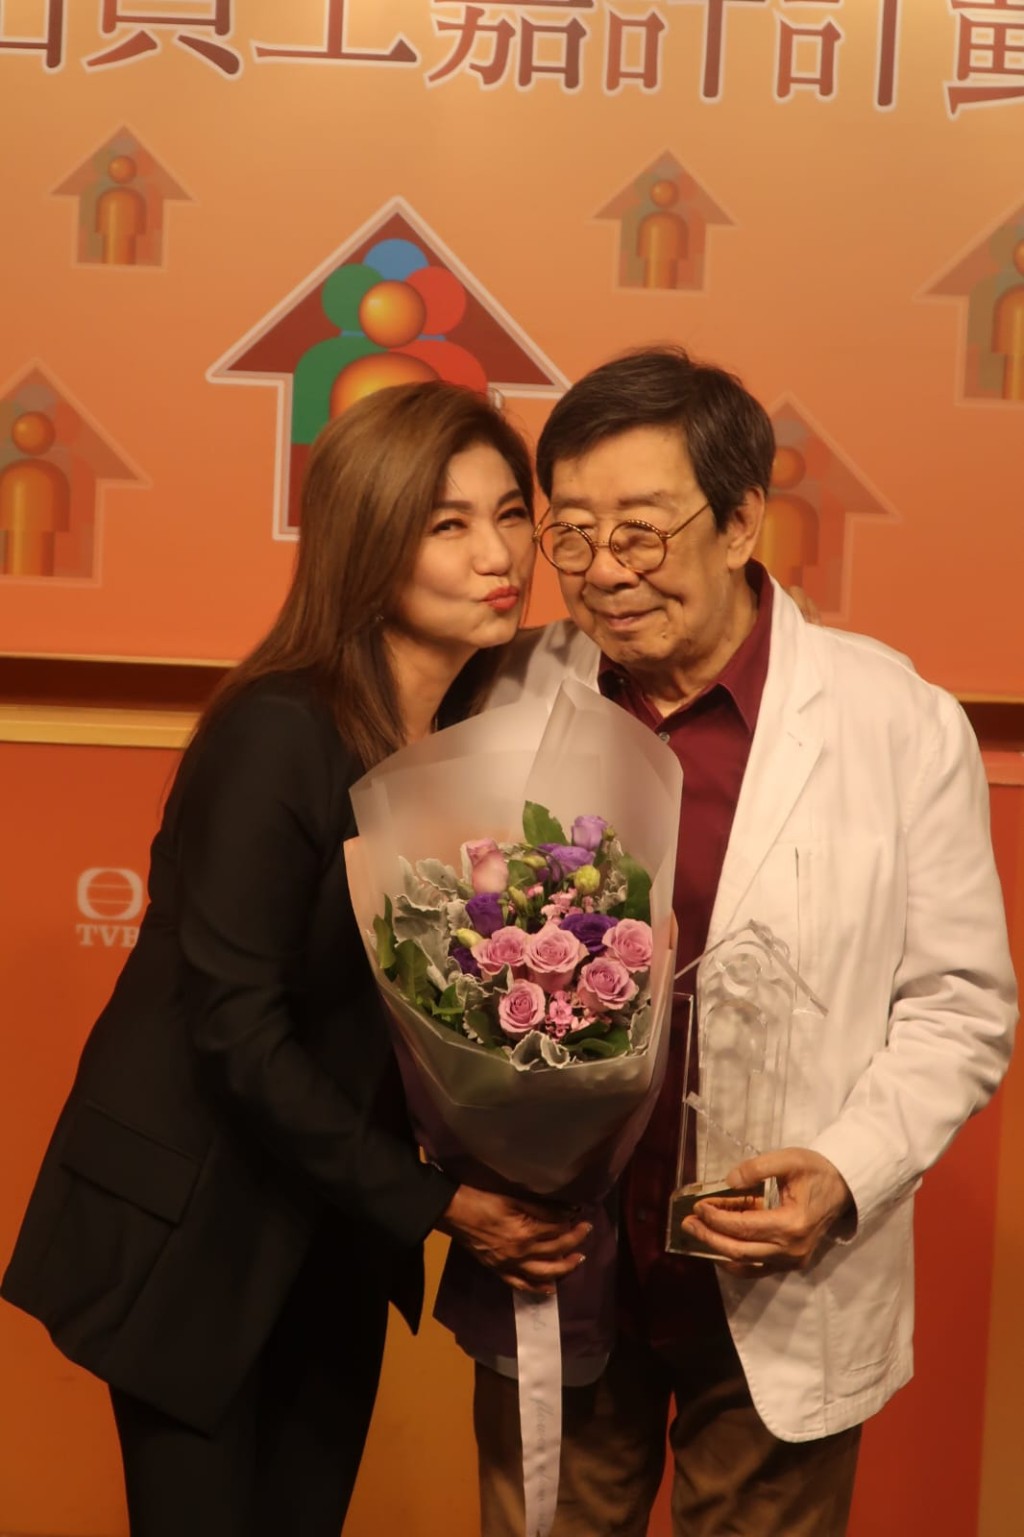 胡枫早前获TVB颁发杰出员工奖，获乐易玲献吻。